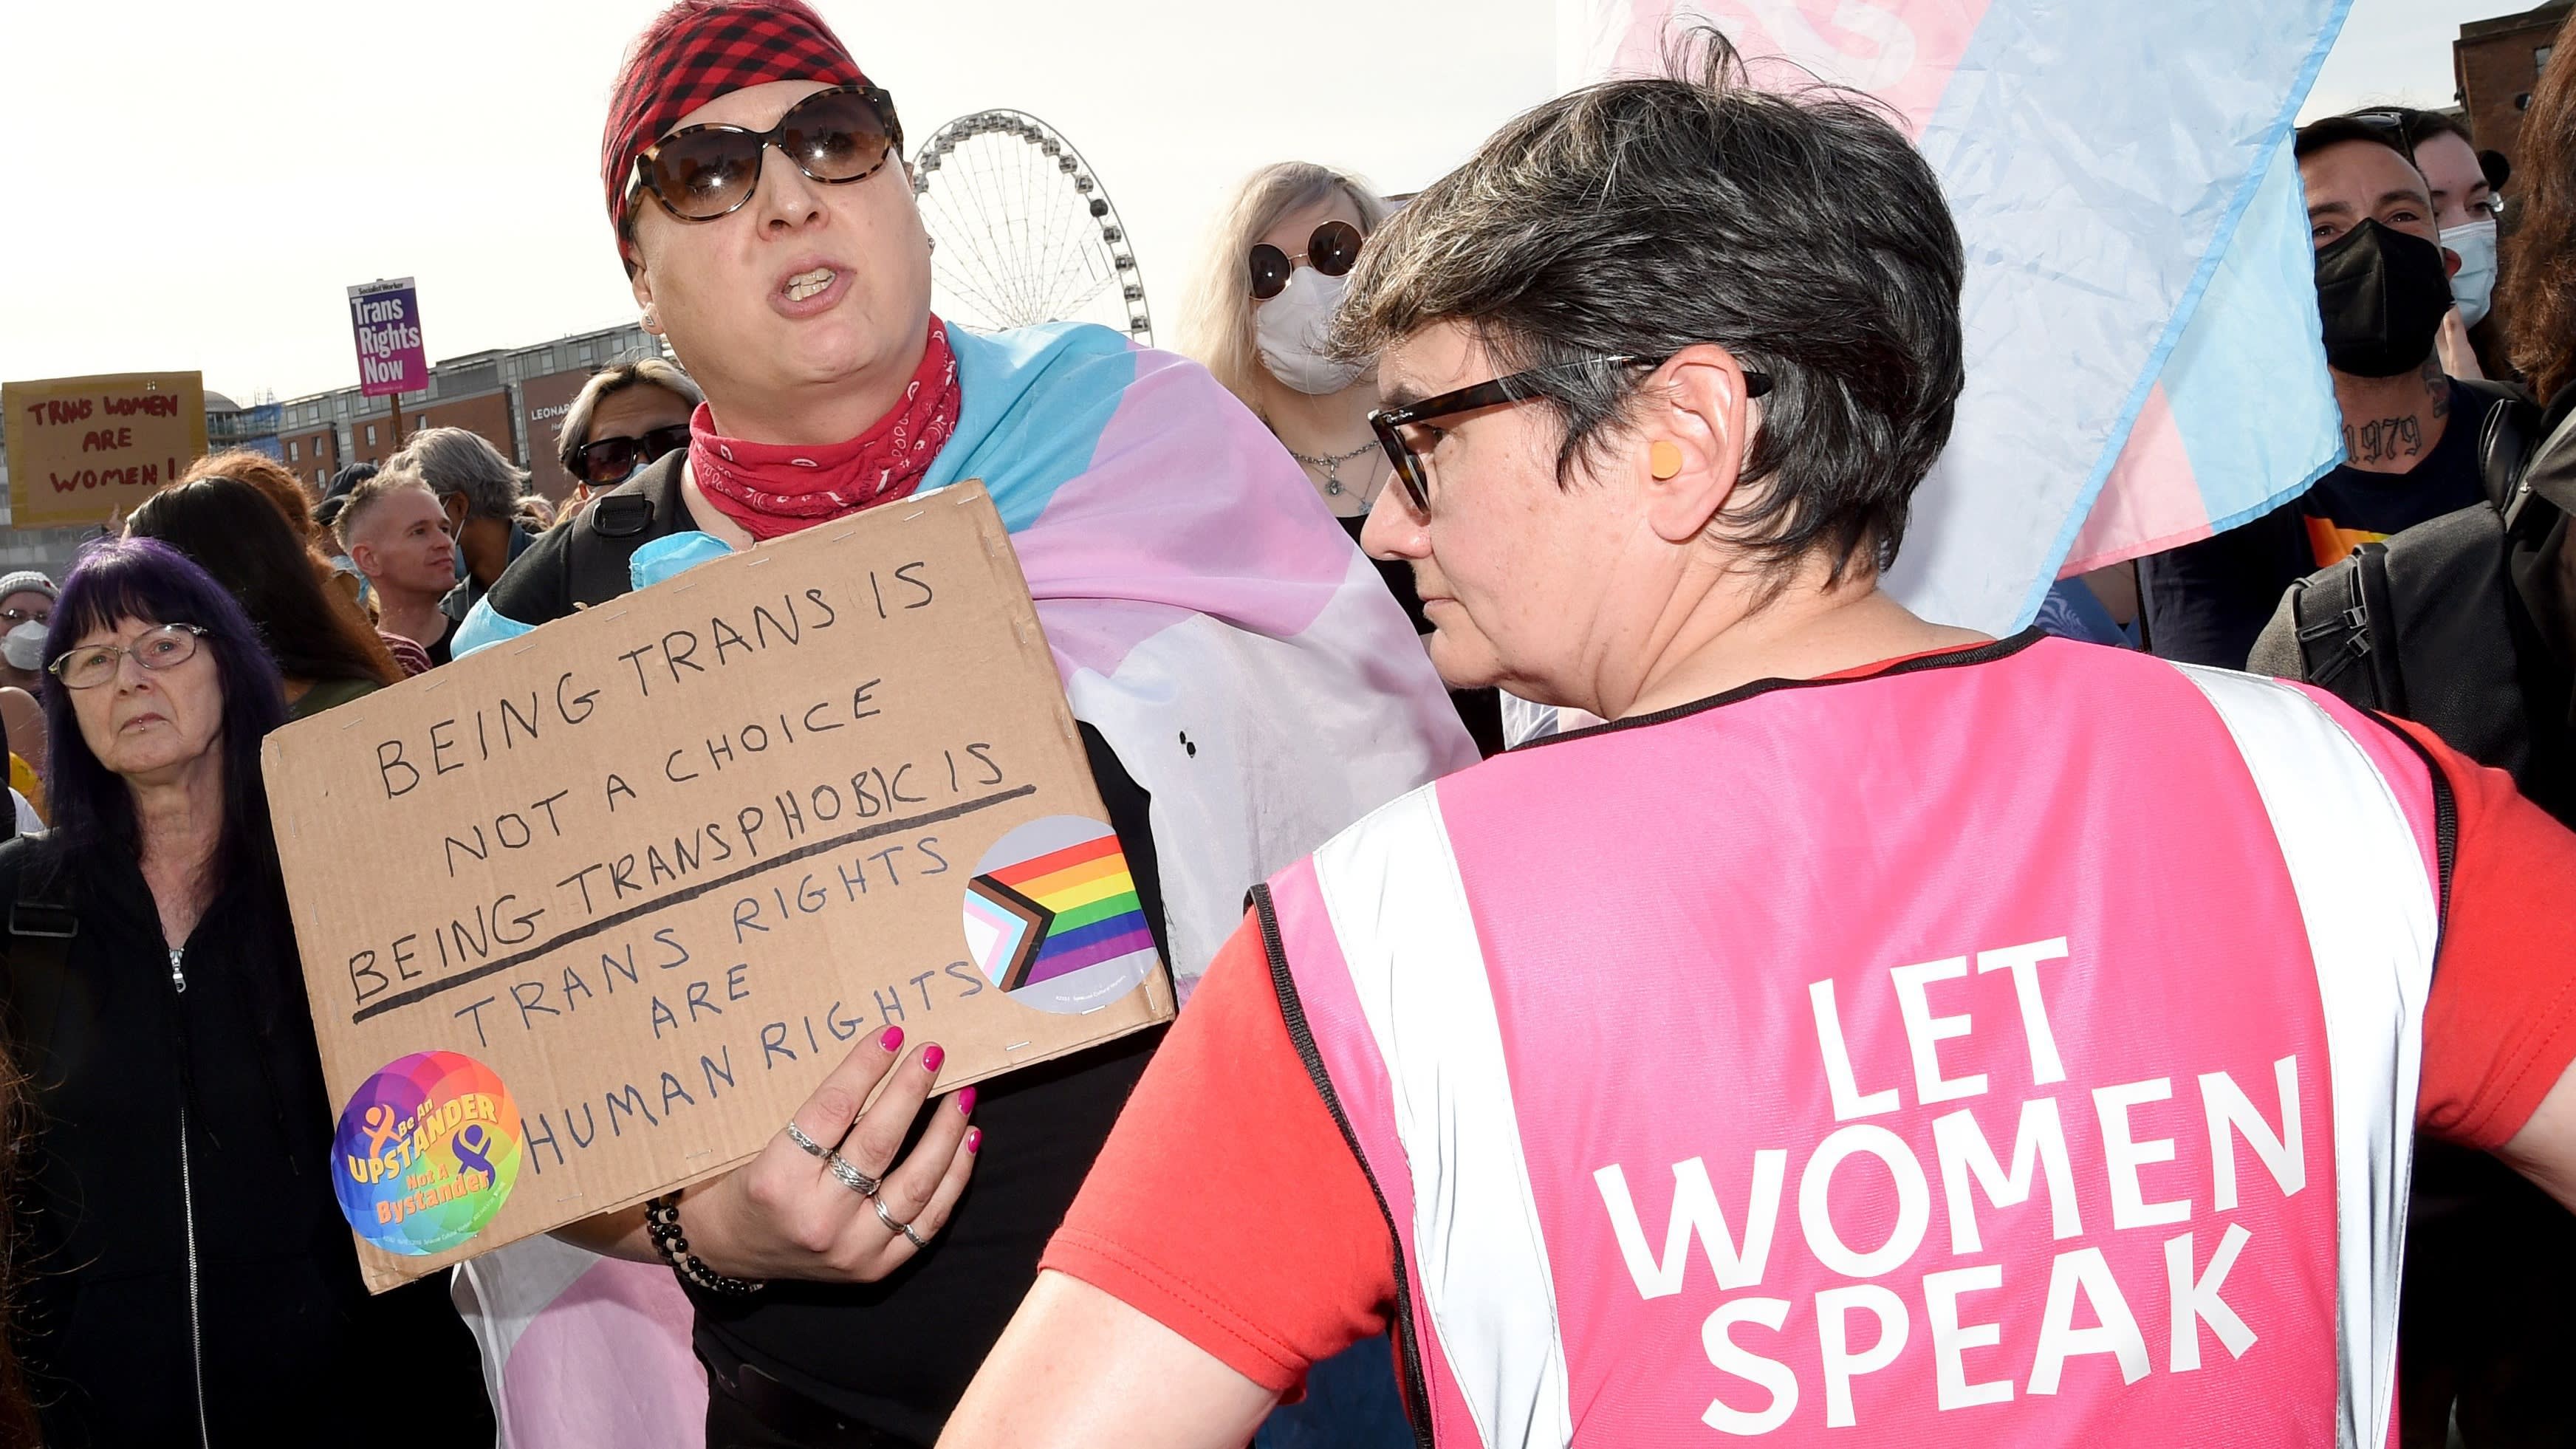 Demonstratie tegen transgenderwet rustig verlopen, ondanks aanwezigheid Antifa